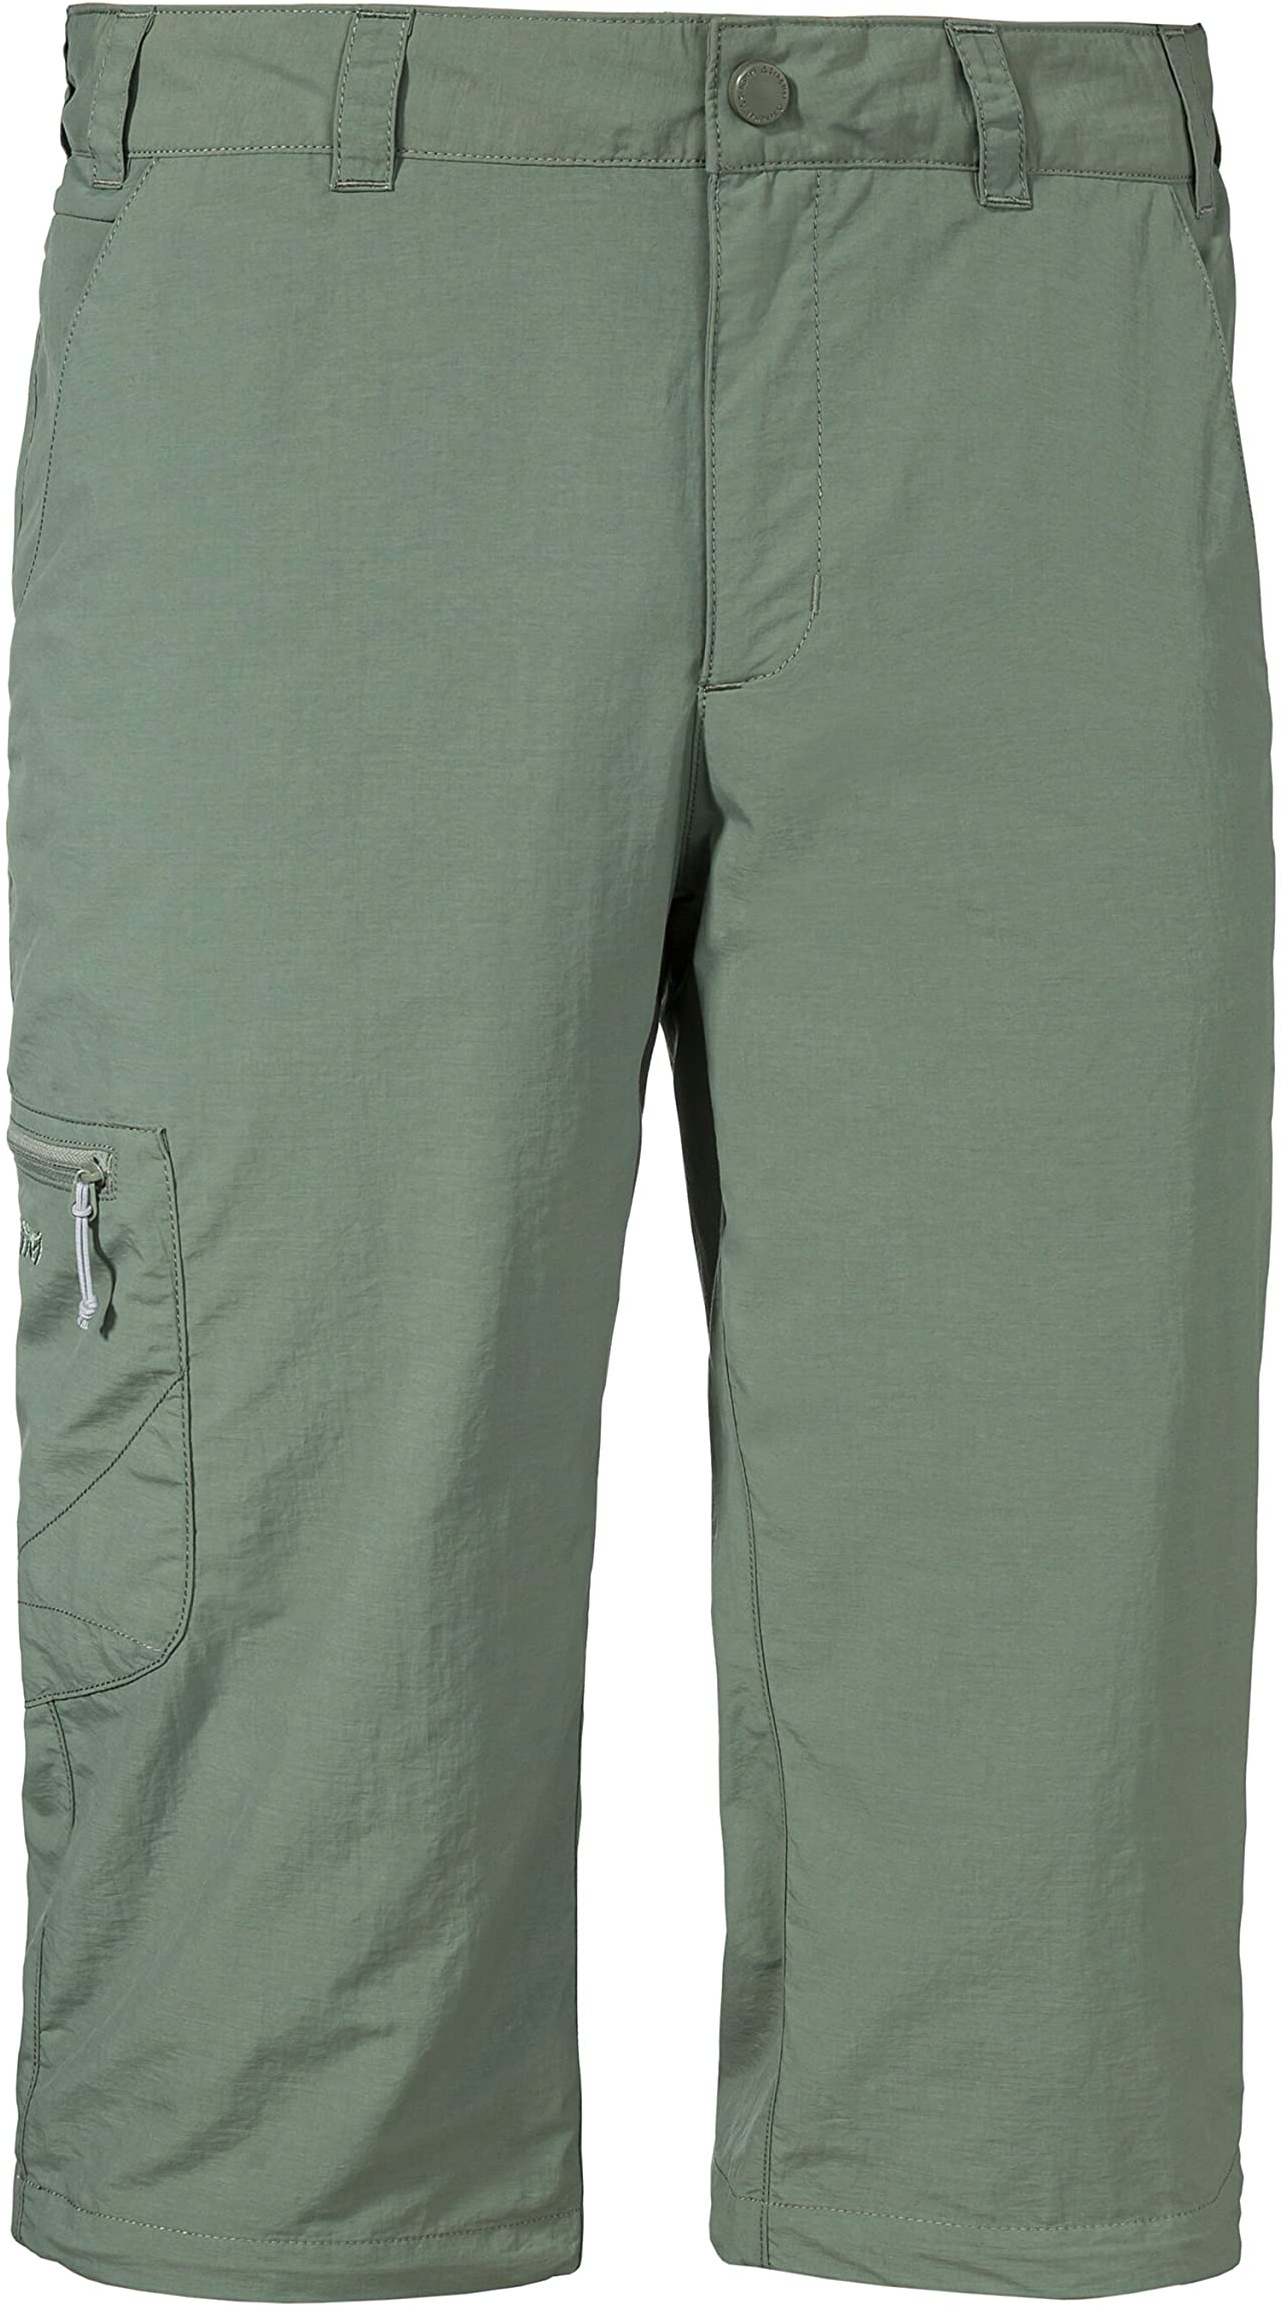 Schöffel Herren Pants Springdale1, vielseitige 3/4 Wanderhose mit elastischem Bund, Outdoor Hose mit separatem Gürtel